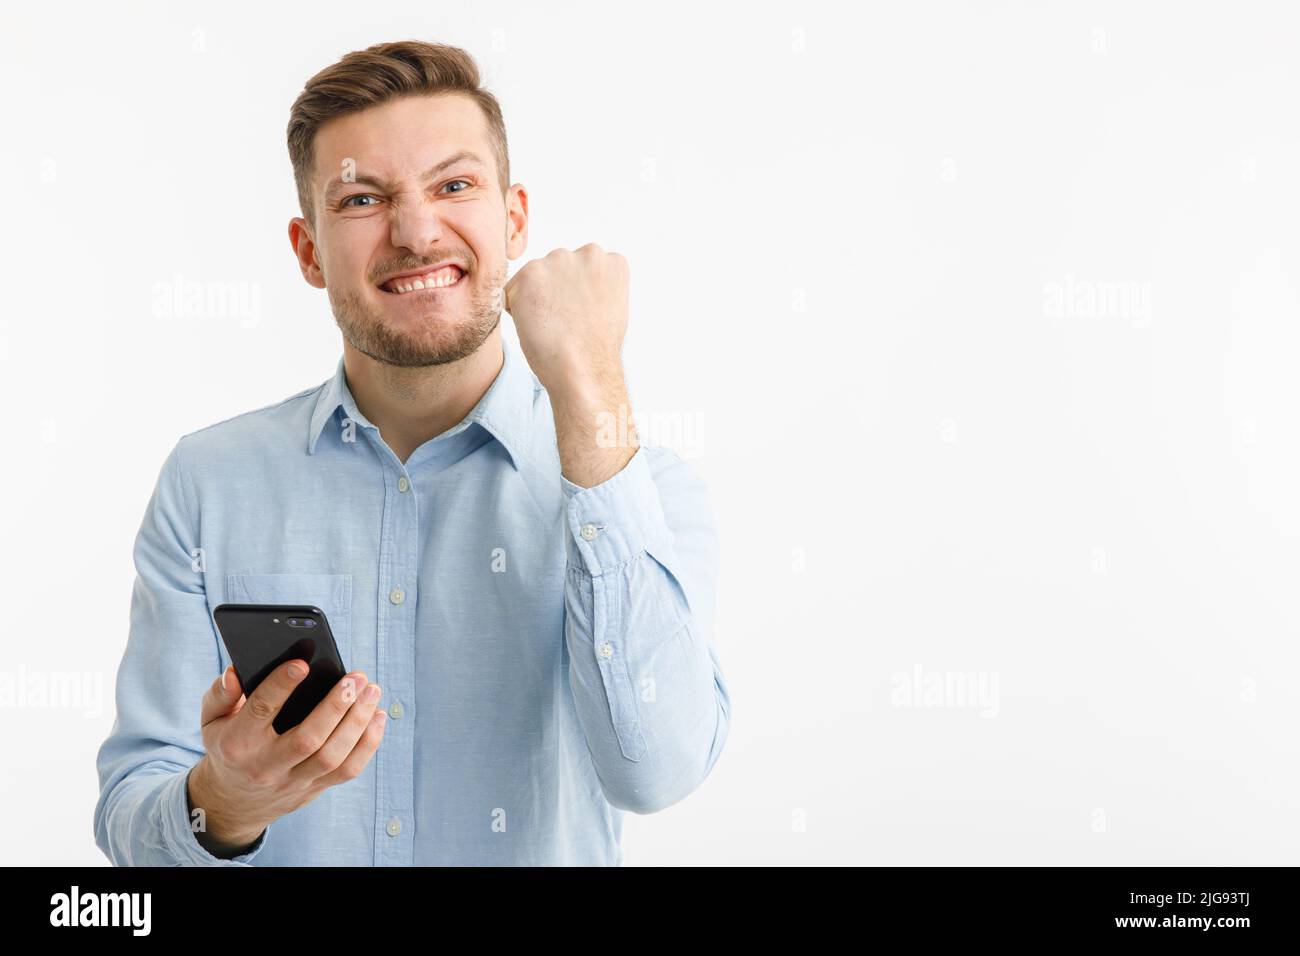 Un uomo tiene uno smartphone in mano e si rallegra di una transazione di successo sugli scambi cripto. Isolato su sfondo bianco. Foto Stock